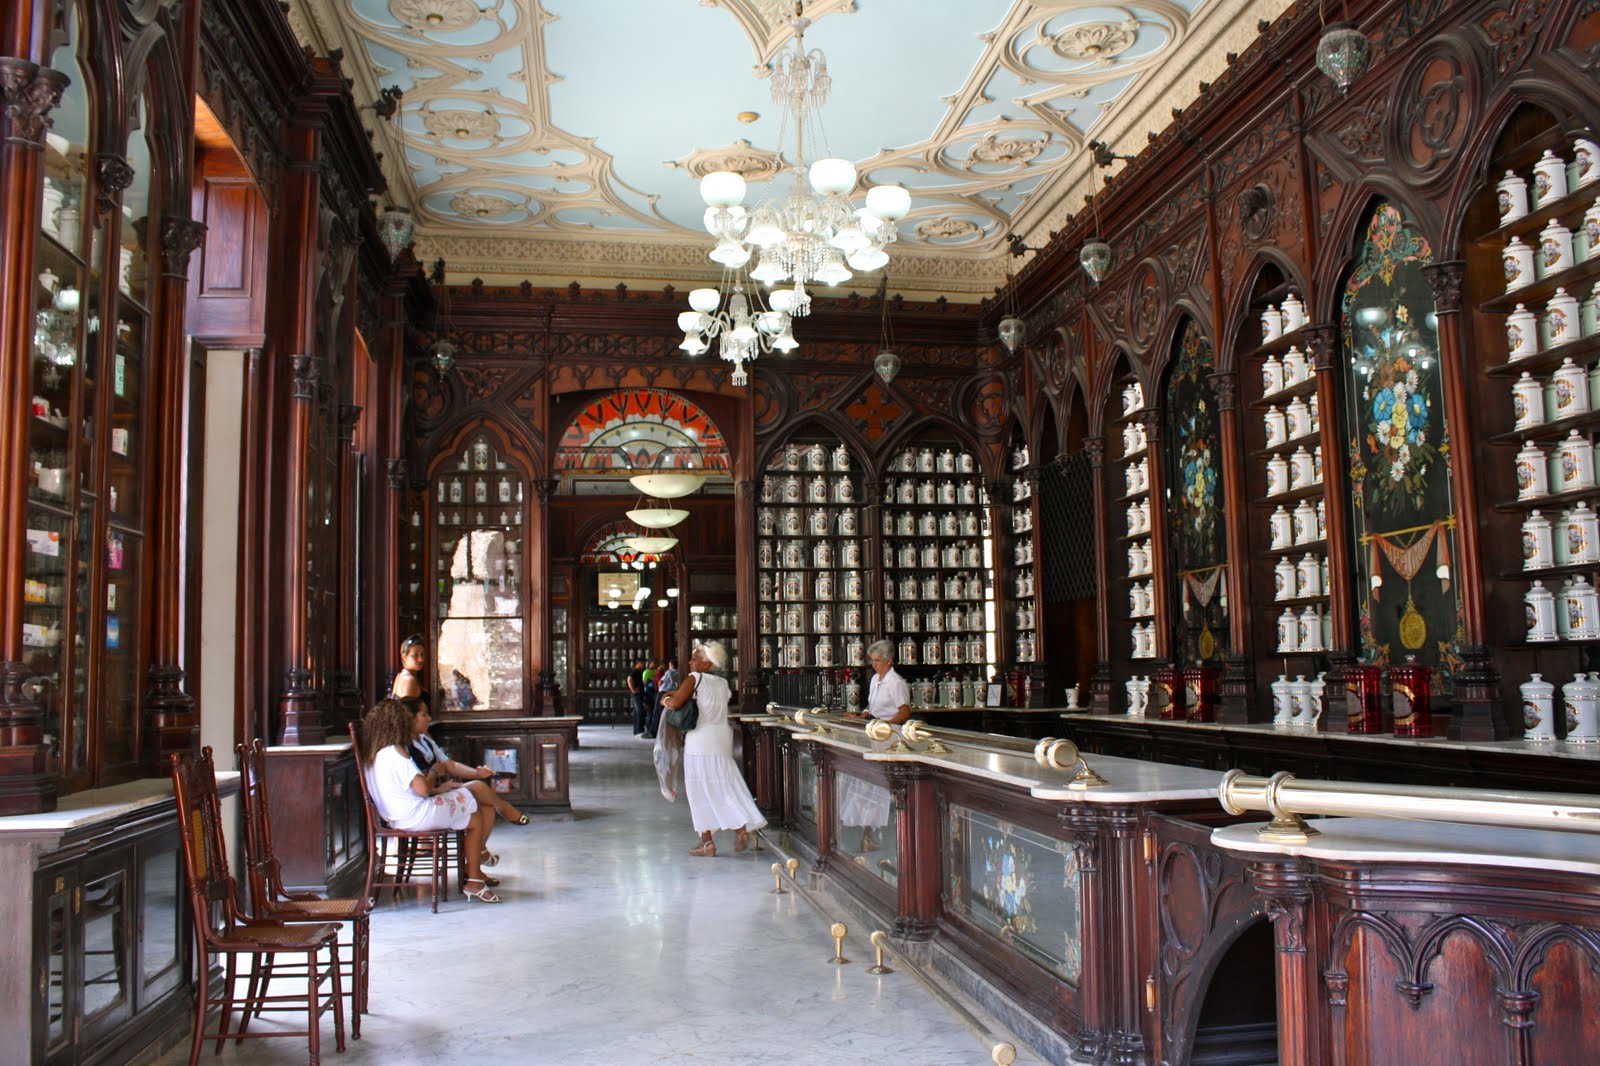 La Reunión, esta farmacia en La Habana fue considerada en su momento la segunda más grande del mundo